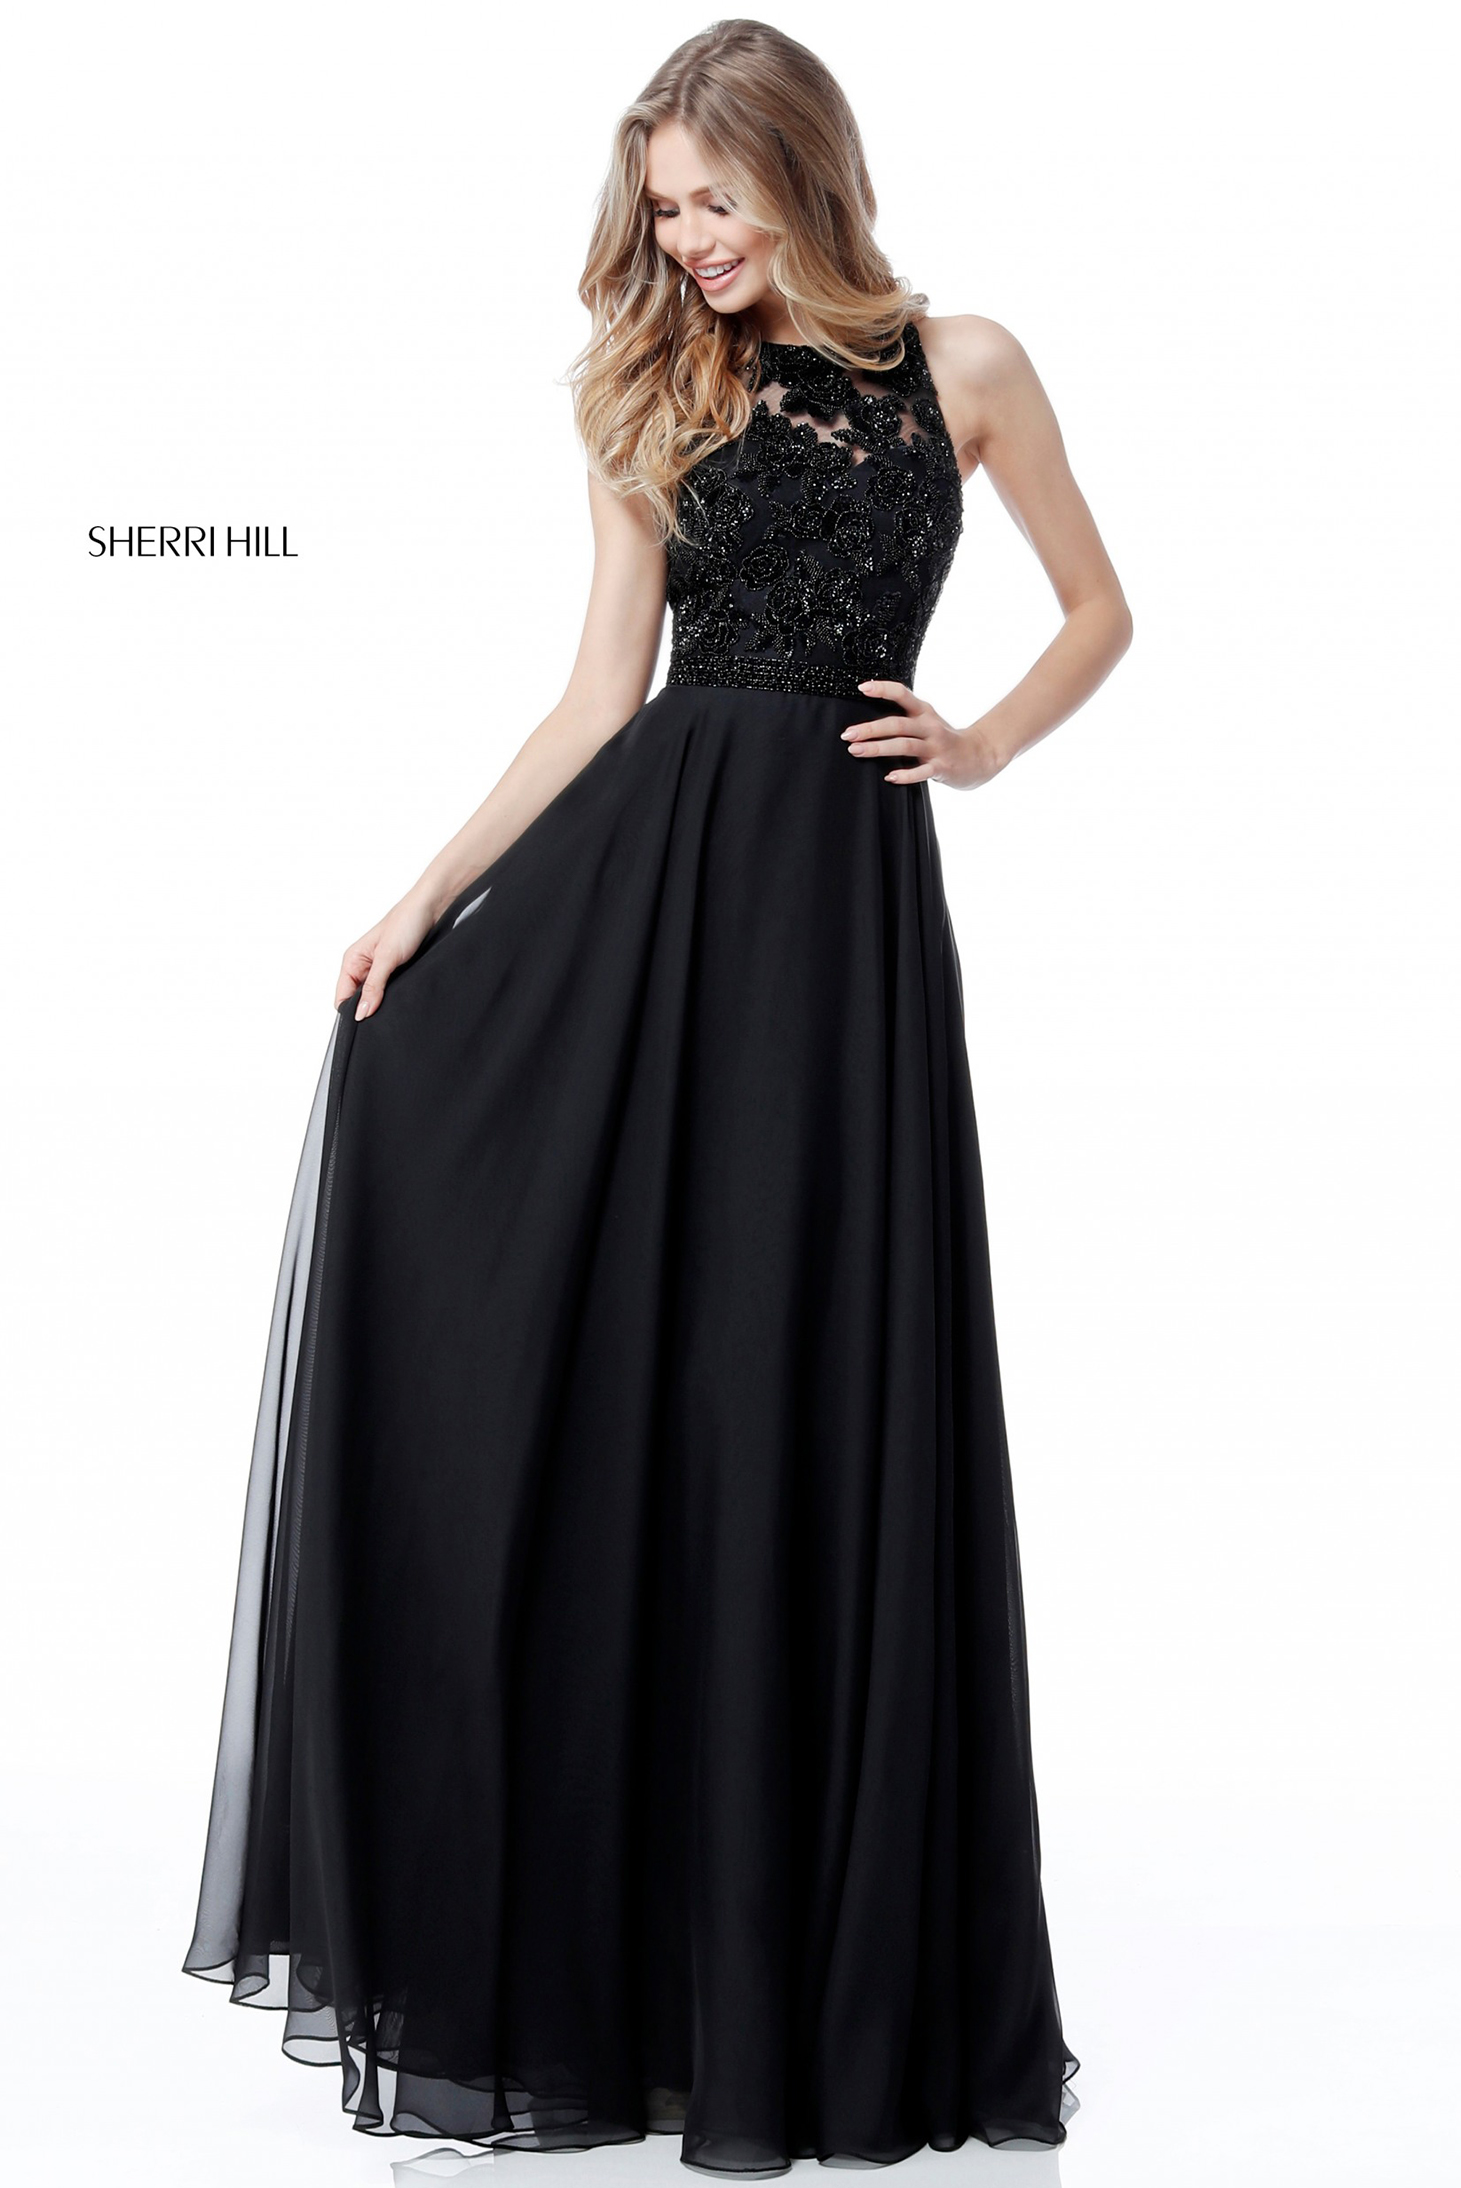 Sherri Hill 51694 Black Dress